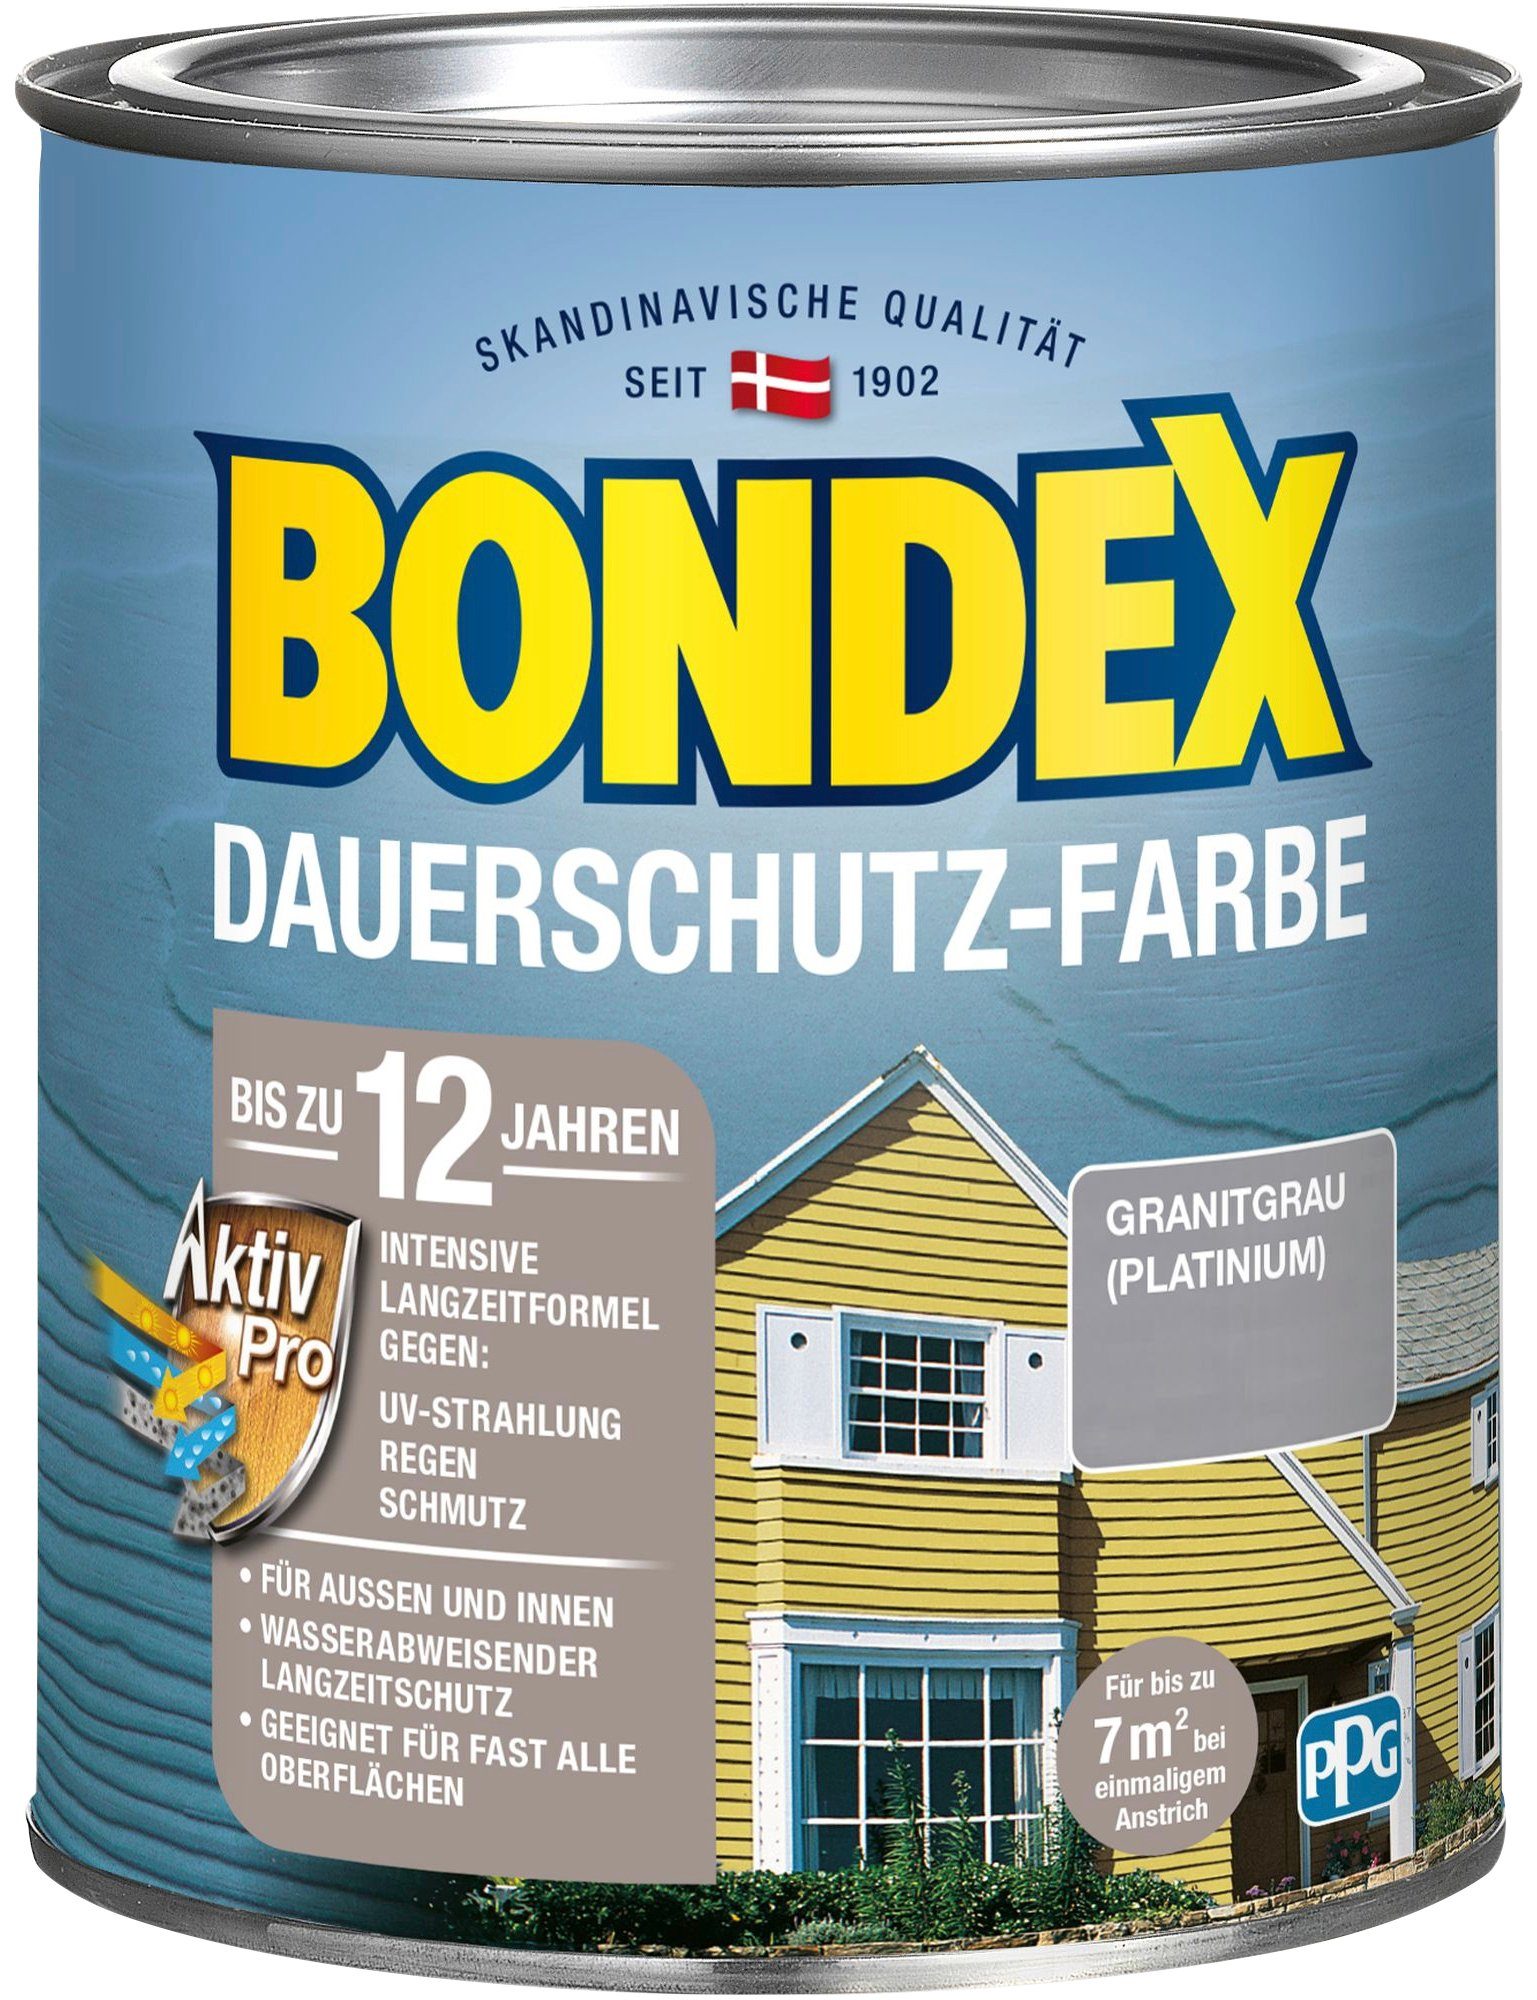 Bondex Wetterschutzfarbe DAUERSCHUTZ-FARBE, für Außen und Innen, Wetterschutz mit Aktiv Pro Langzeitformel grau